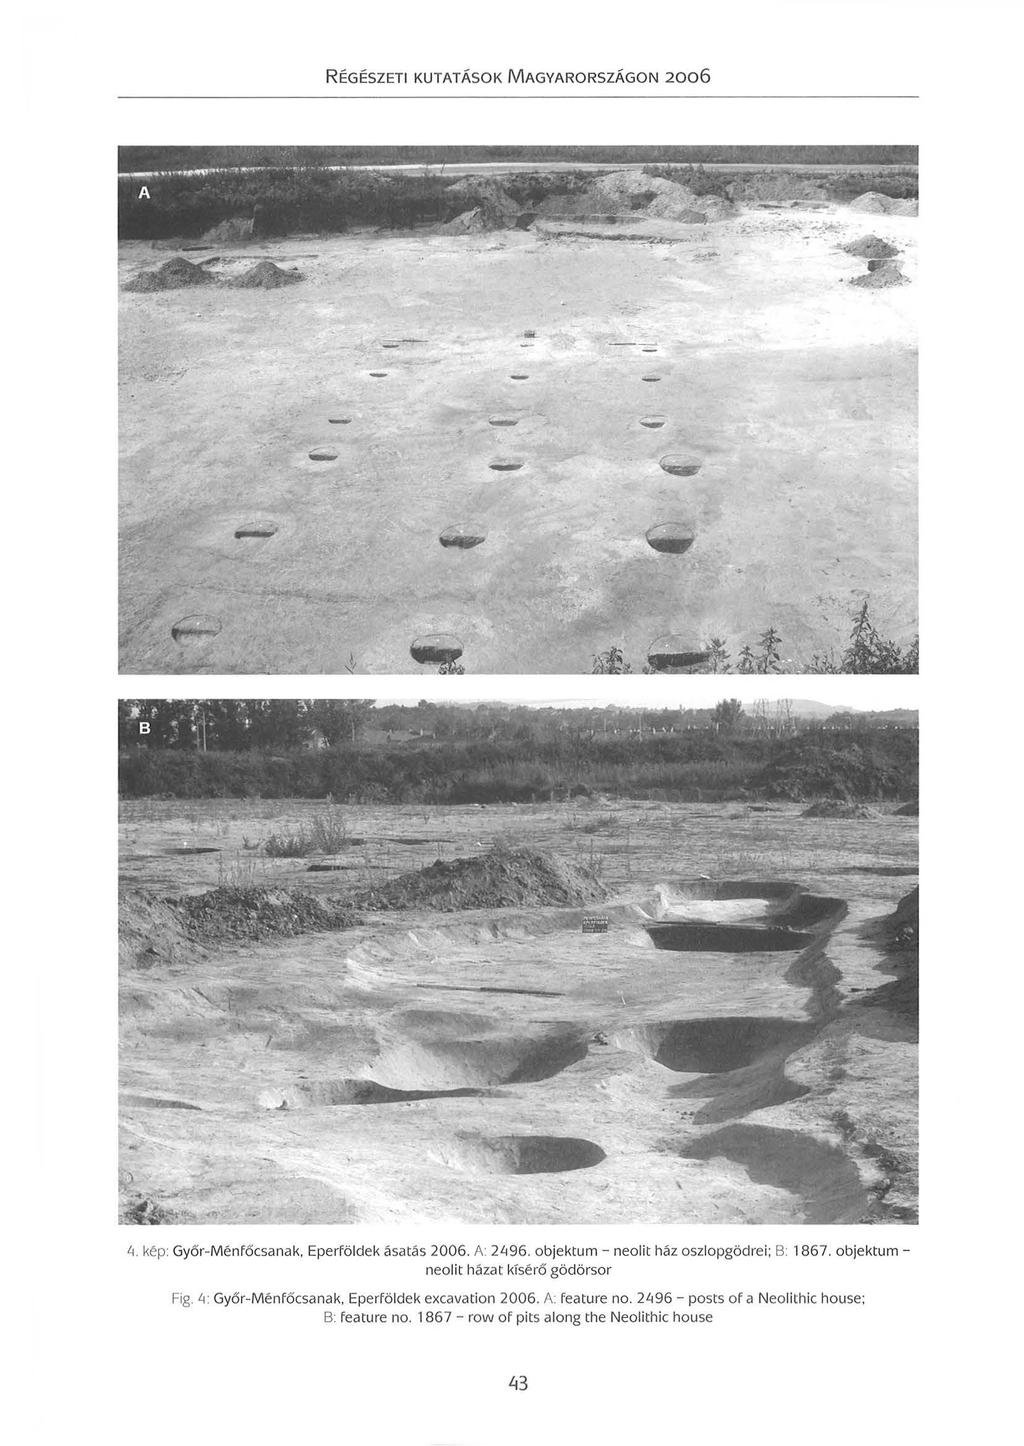 - - - - - - - s \. Lt. kép: Győr-Ménfőcsanak Eperföldek ásatás 2006. A: 2Lt96. objektum - neolit ház oszlopgödrei; B: 1867.